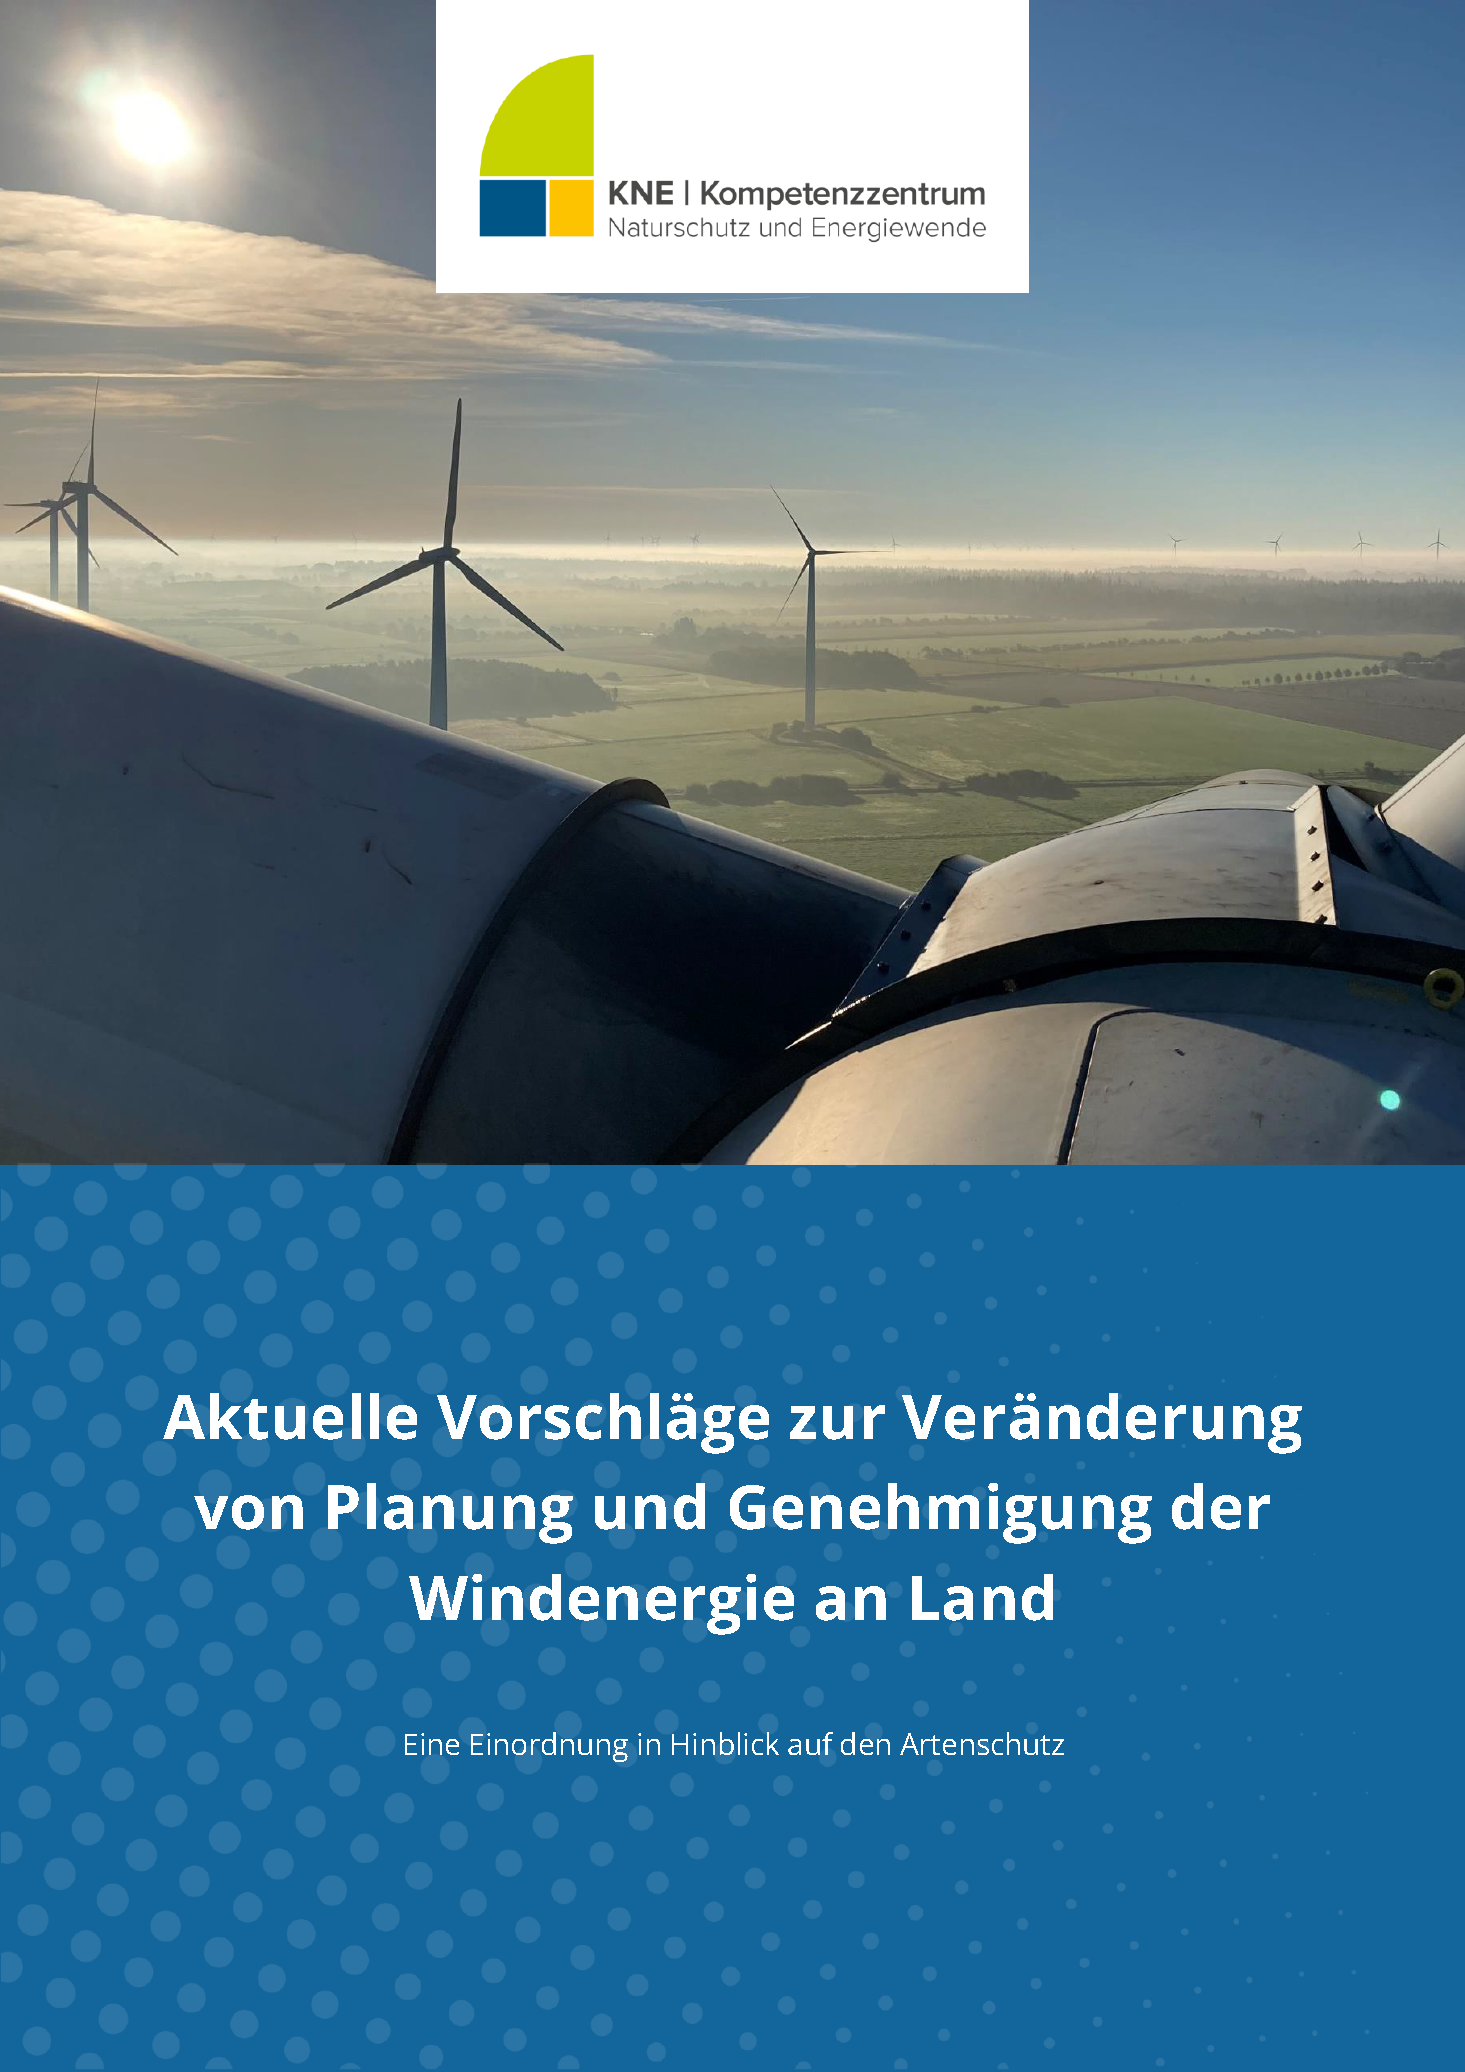 Titel mit Luftbild Windenergieanlagen